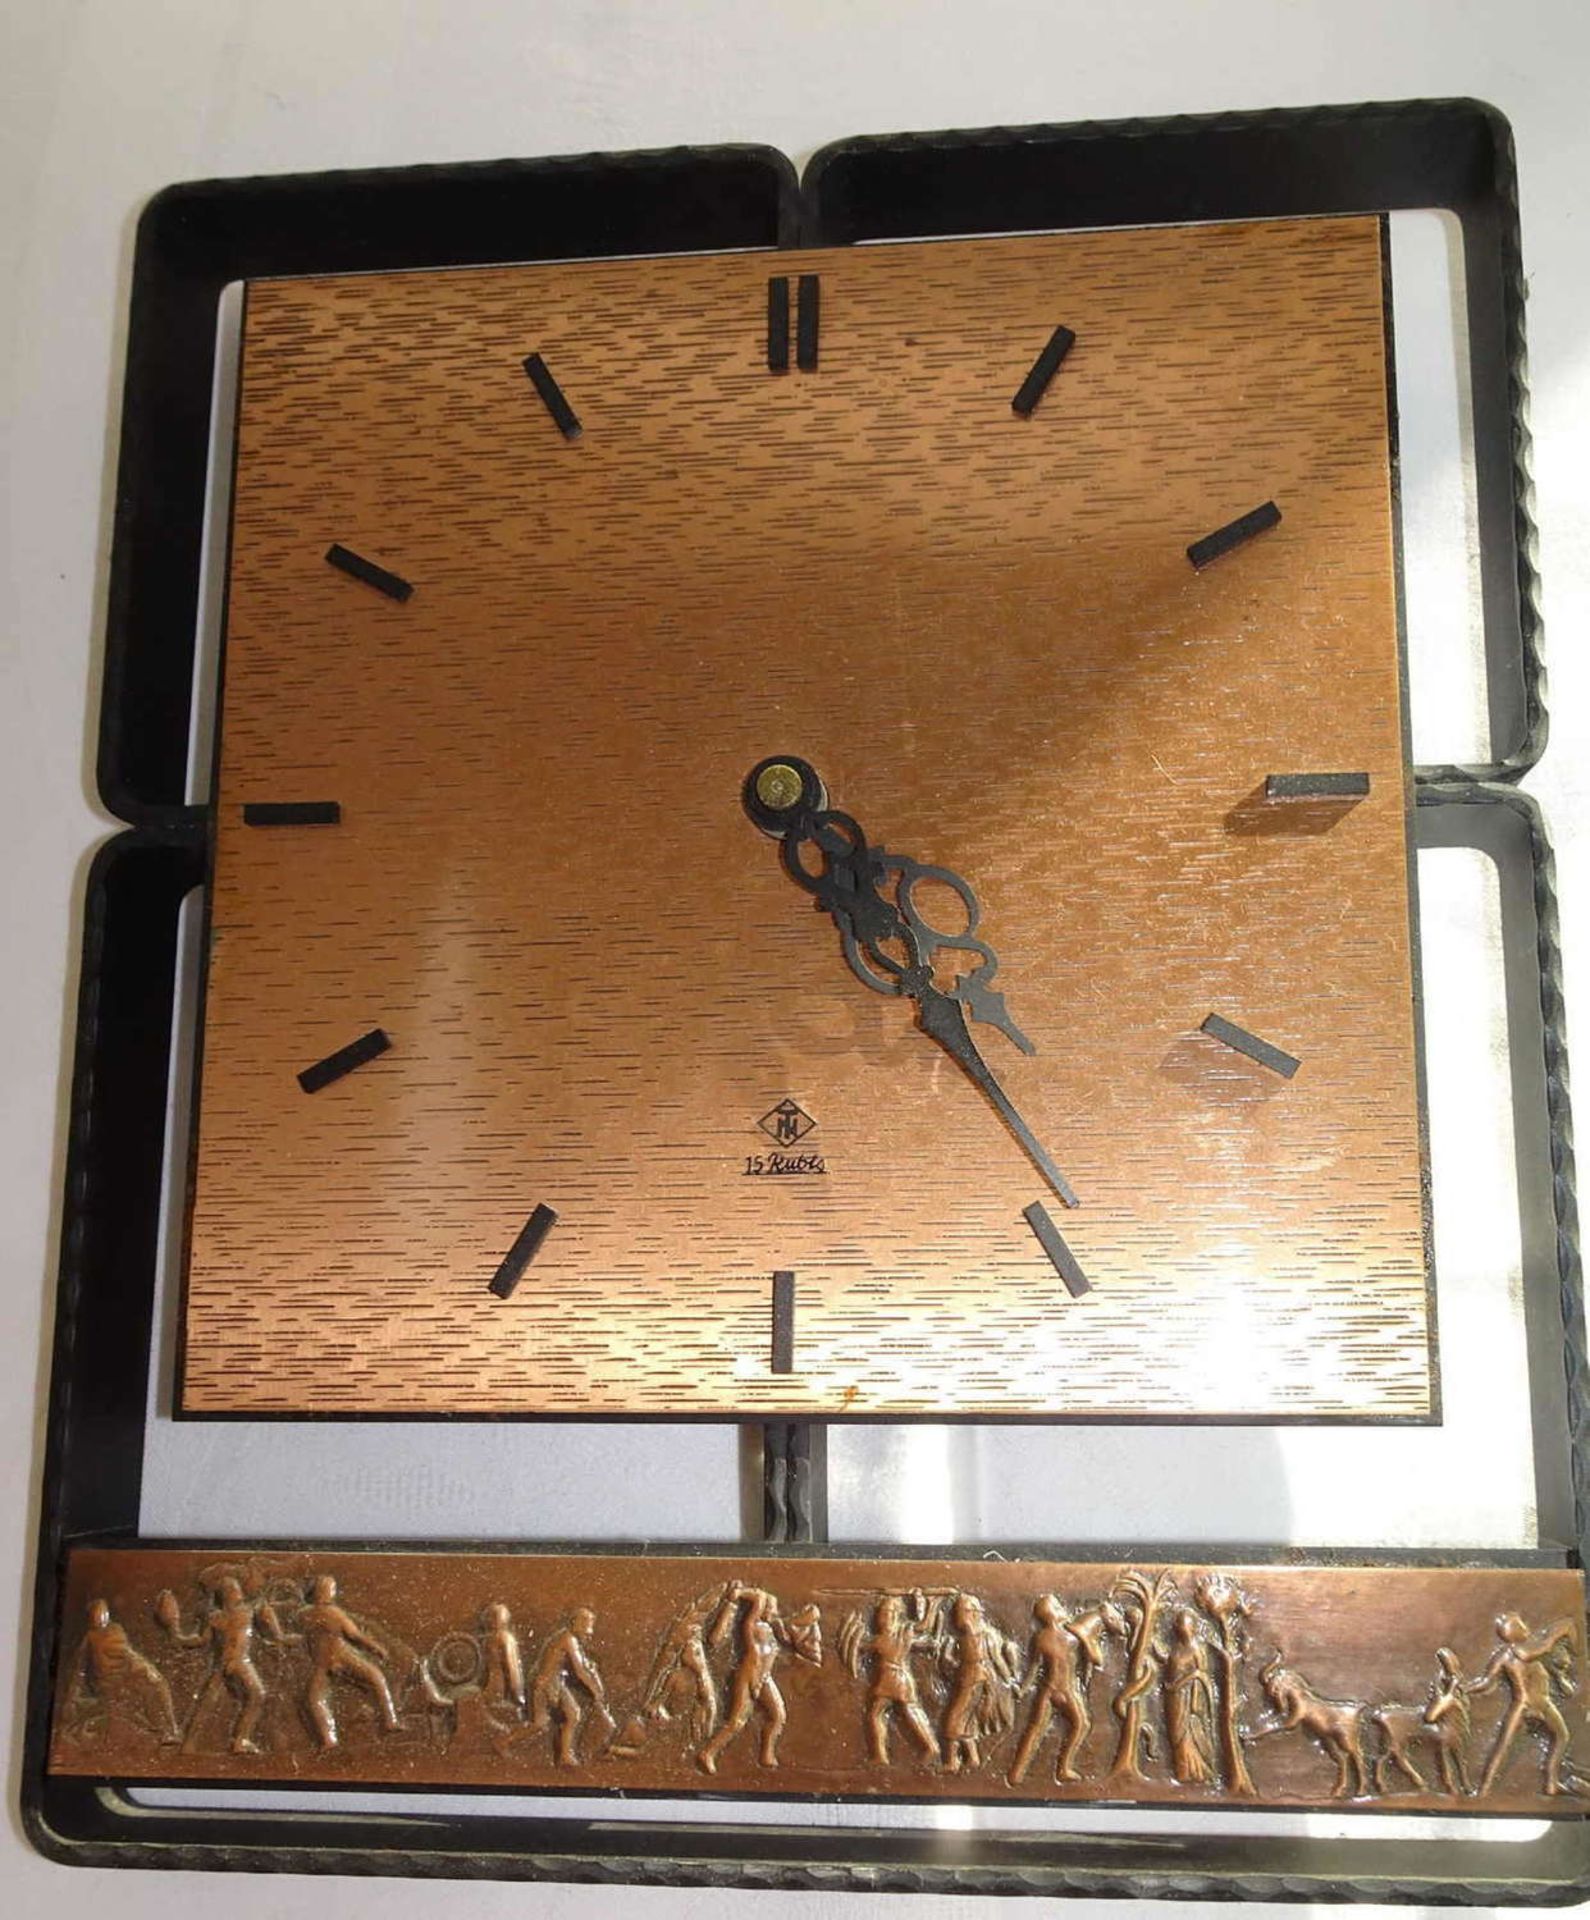 TN Wanduhr Kupfer.TN wall clock copper.